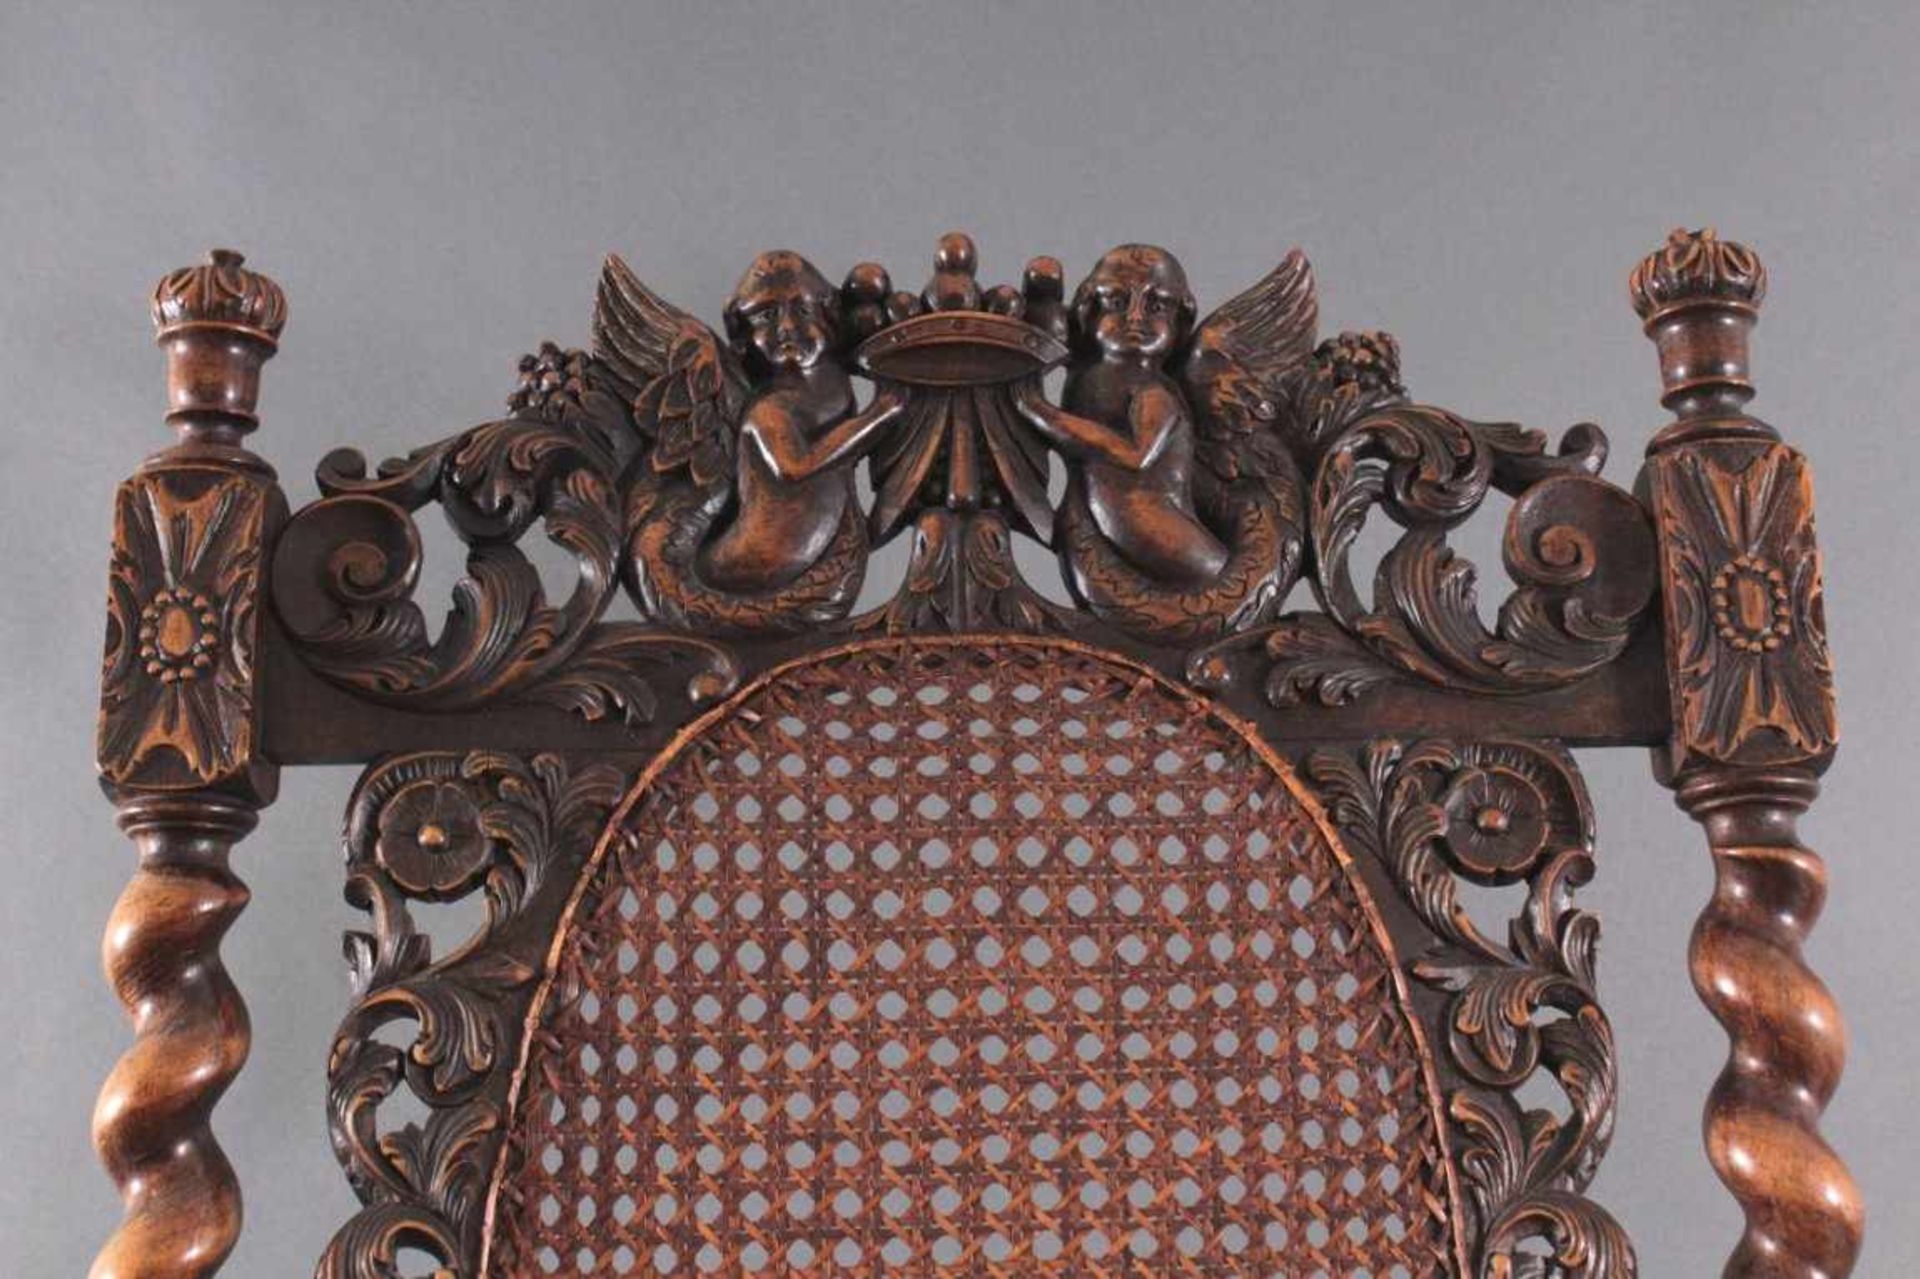 Armlehnenstuhl 19. Jh.Eiche, teilweise gedrechselt, reich mit Schnitzereien,Engelnund floralen - Bild 3 aus 4